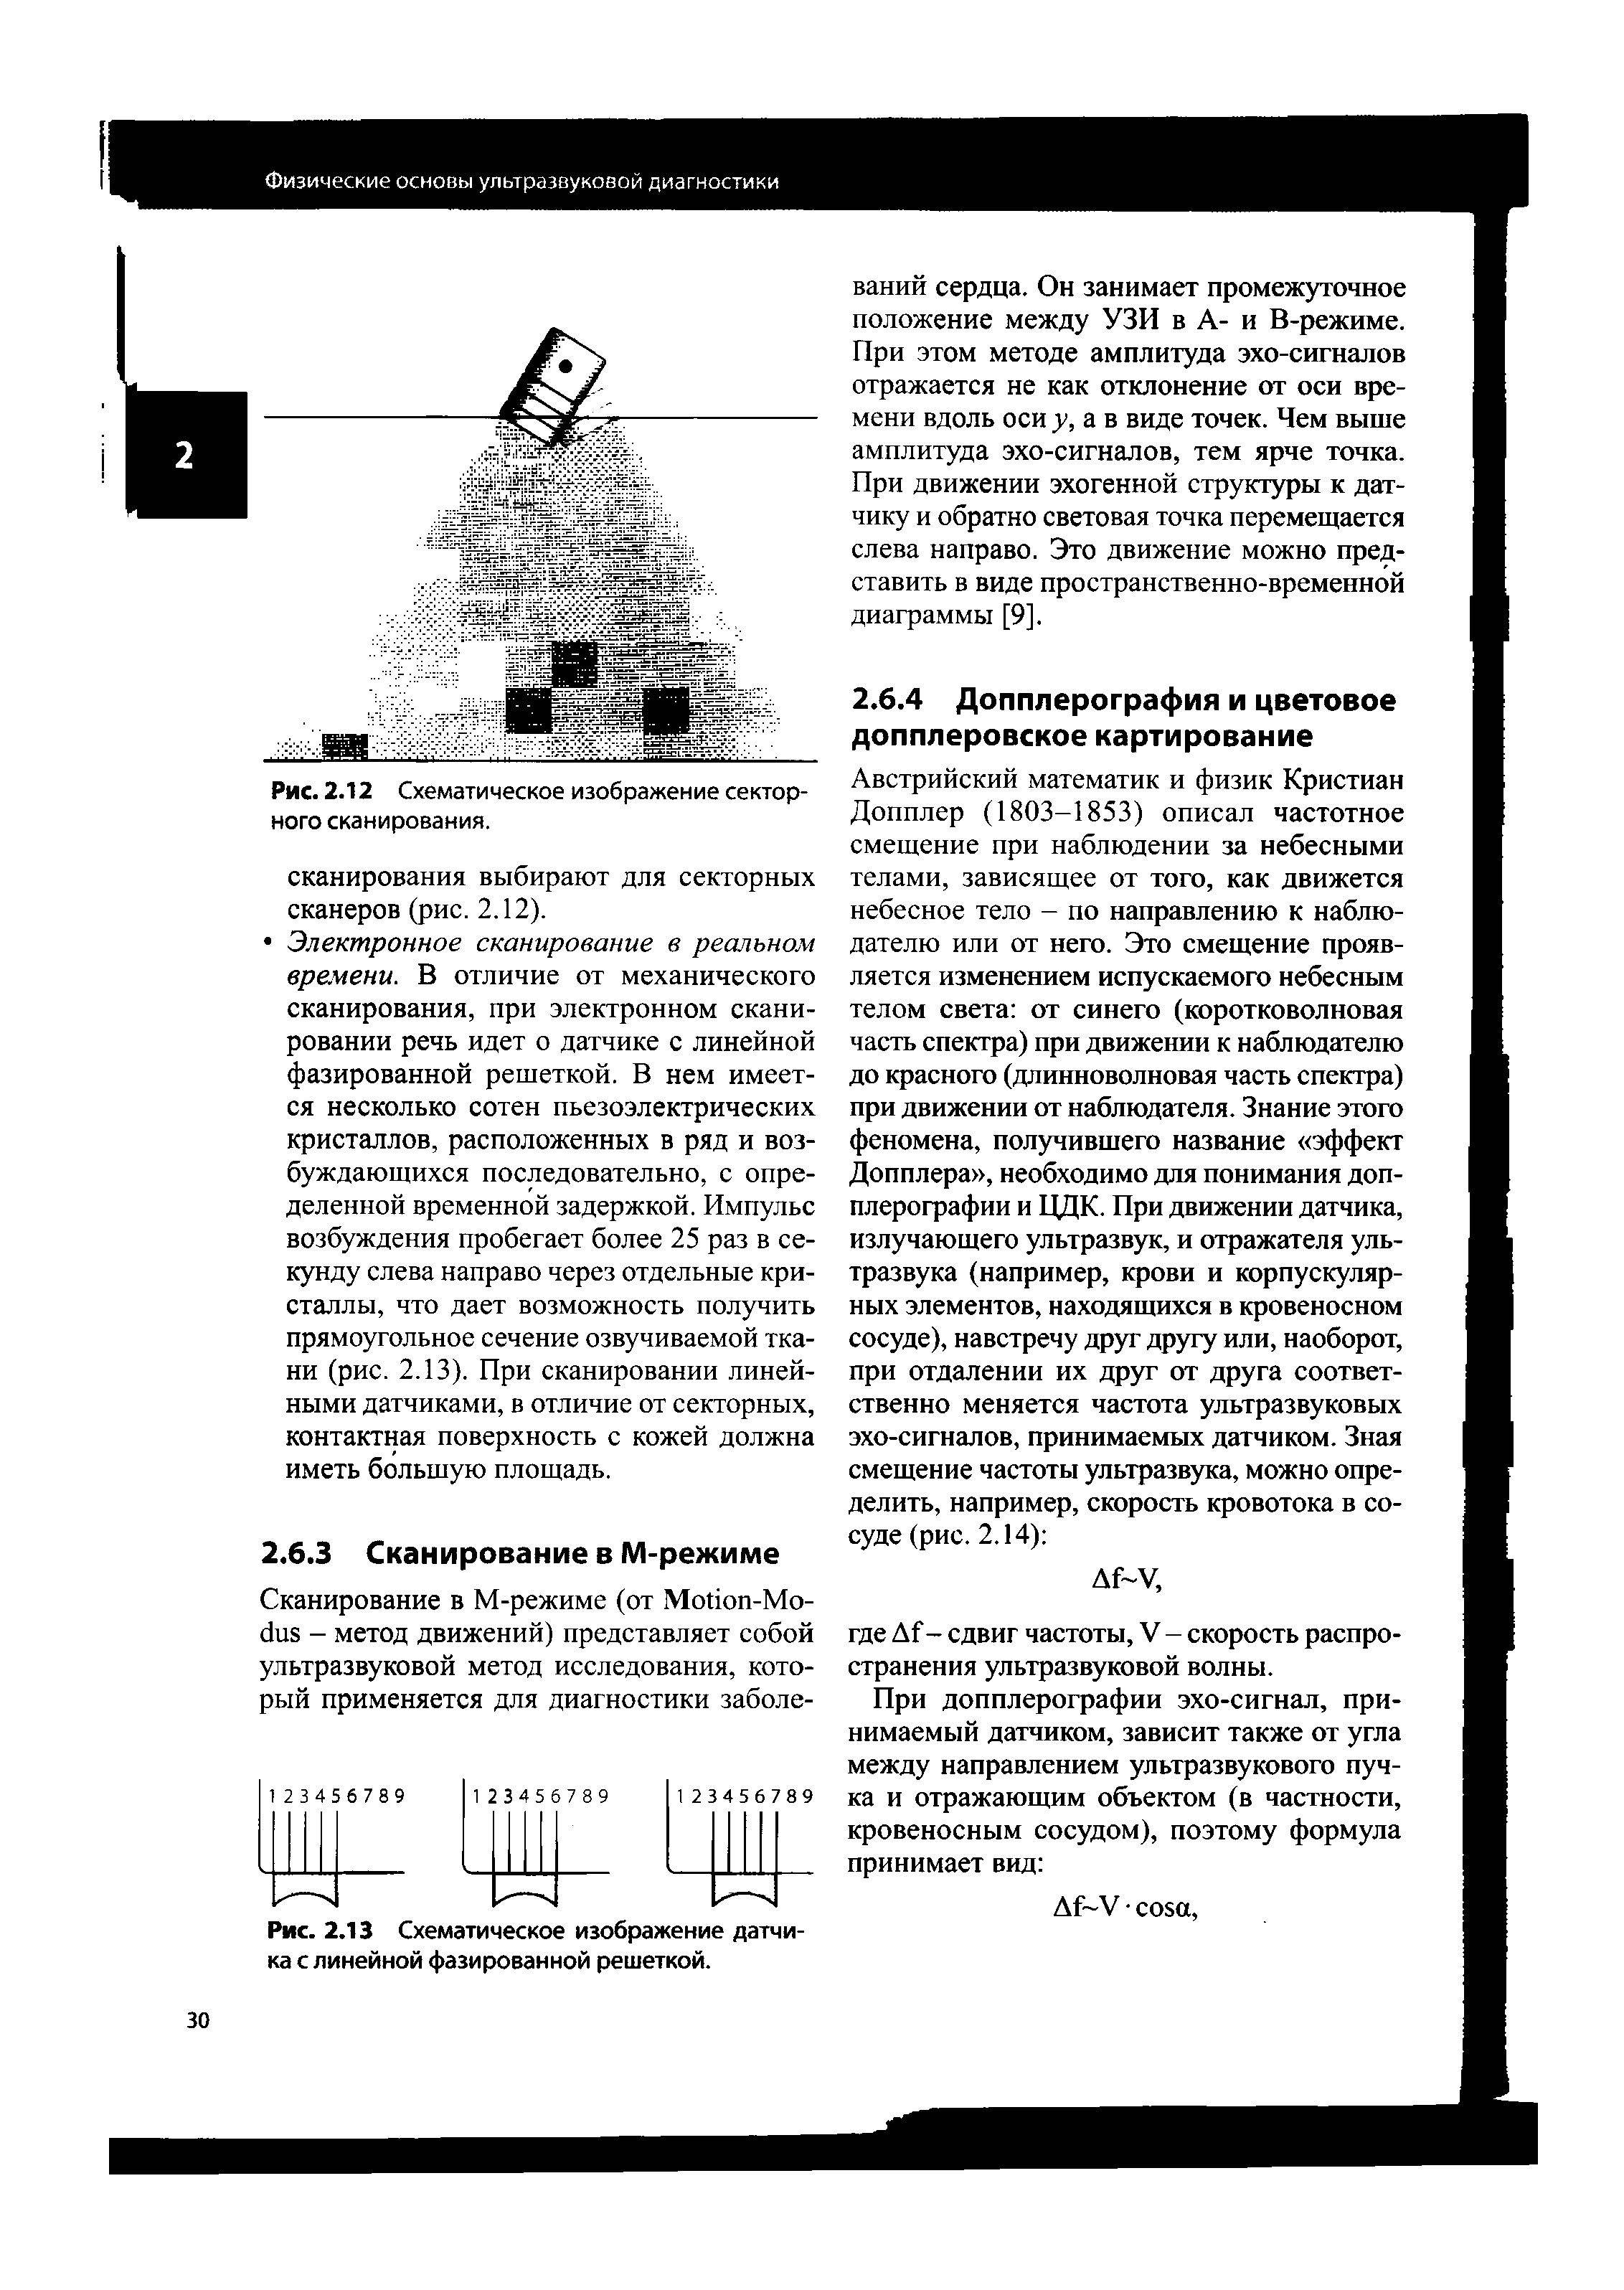 Рис. 2.13 Схематическое изображение датчика с линейной фазированной решеткой.